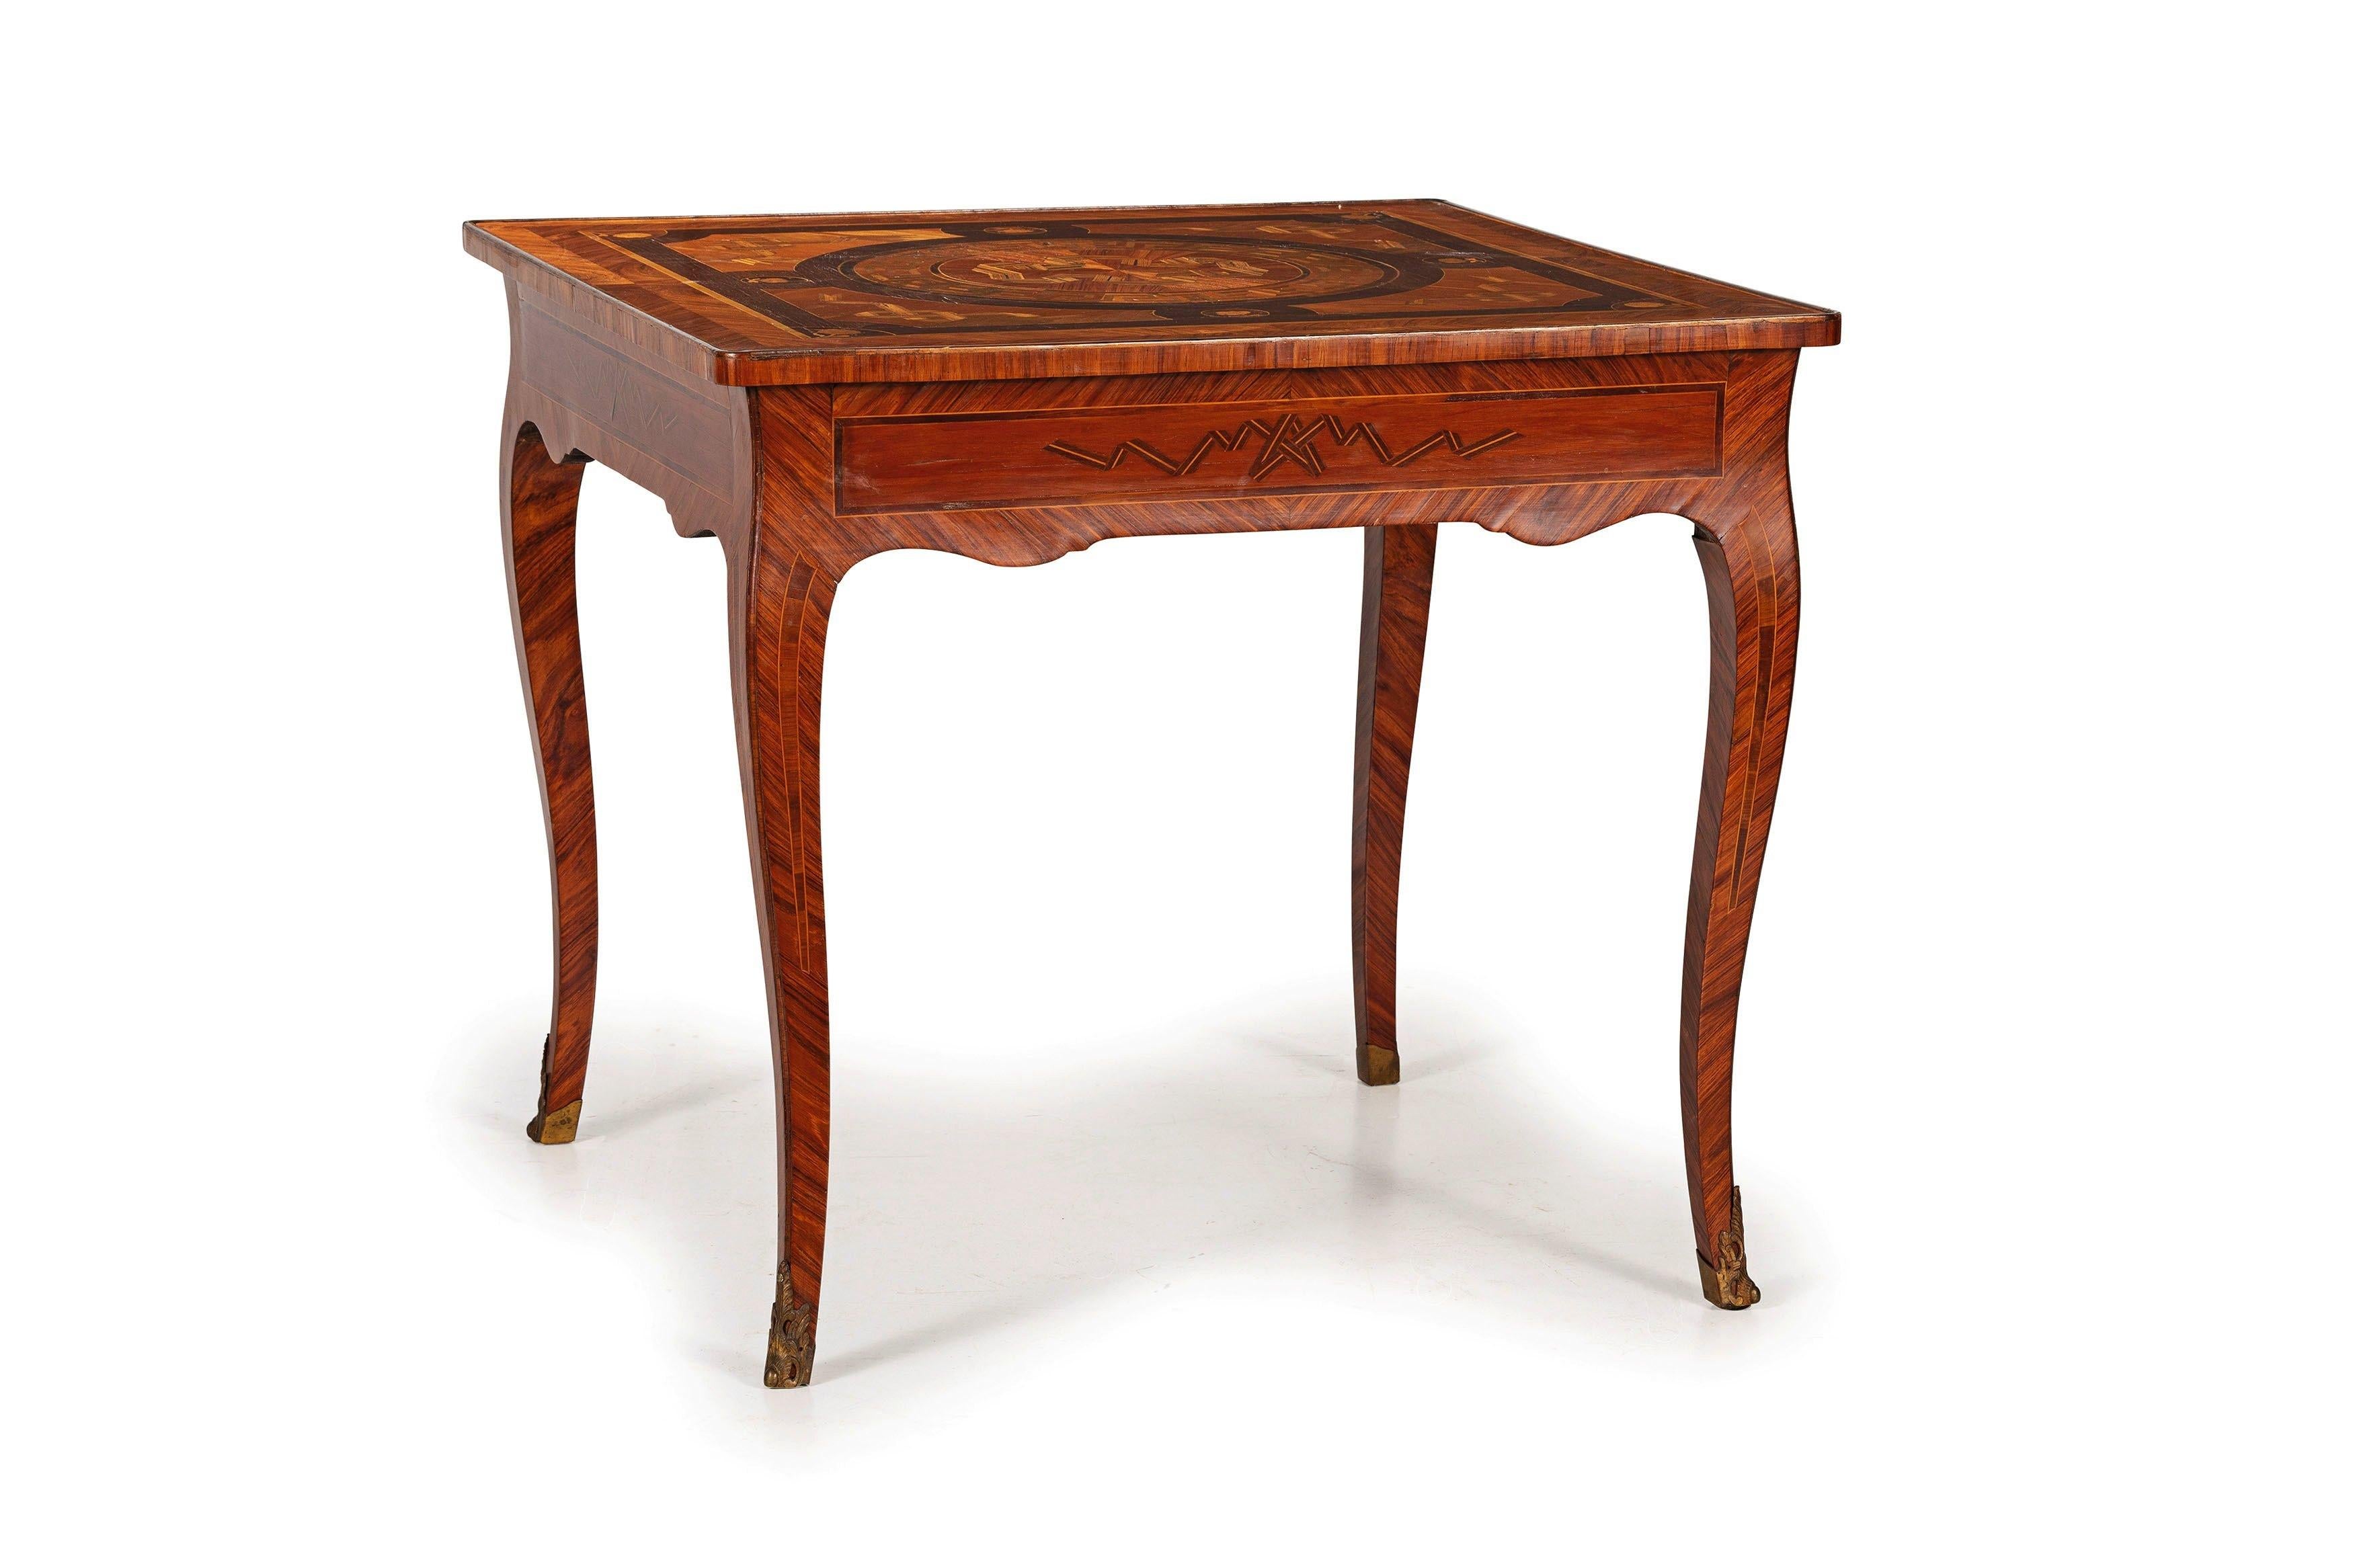 xVIIIe siècle, table centrale italienne en bois marqueté.
Ce centre de table raffiné, fini sur les quatre côtés, a été fabriqué en Italie au XVIIIe siècle, en bois plaqué et incrusté de différentes essences de bois, dont le bois de rose, le